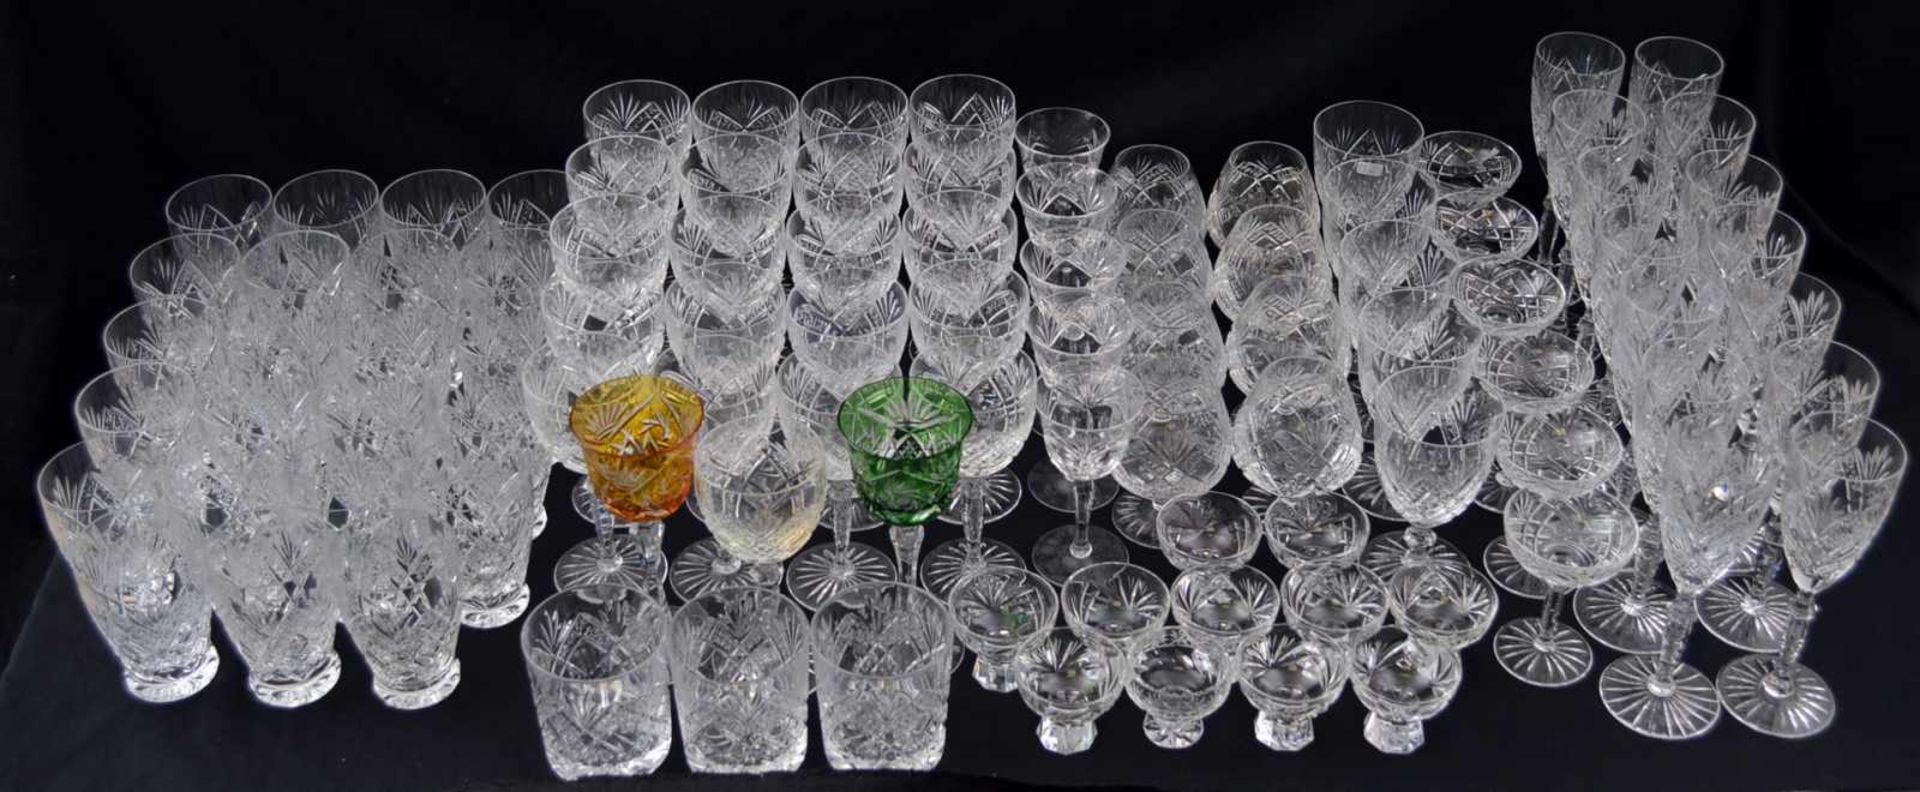 Konvolut 98 Gläser farbl. Kristallglas, geschliffen verziert, zwei Gläser mit buntem Überfang